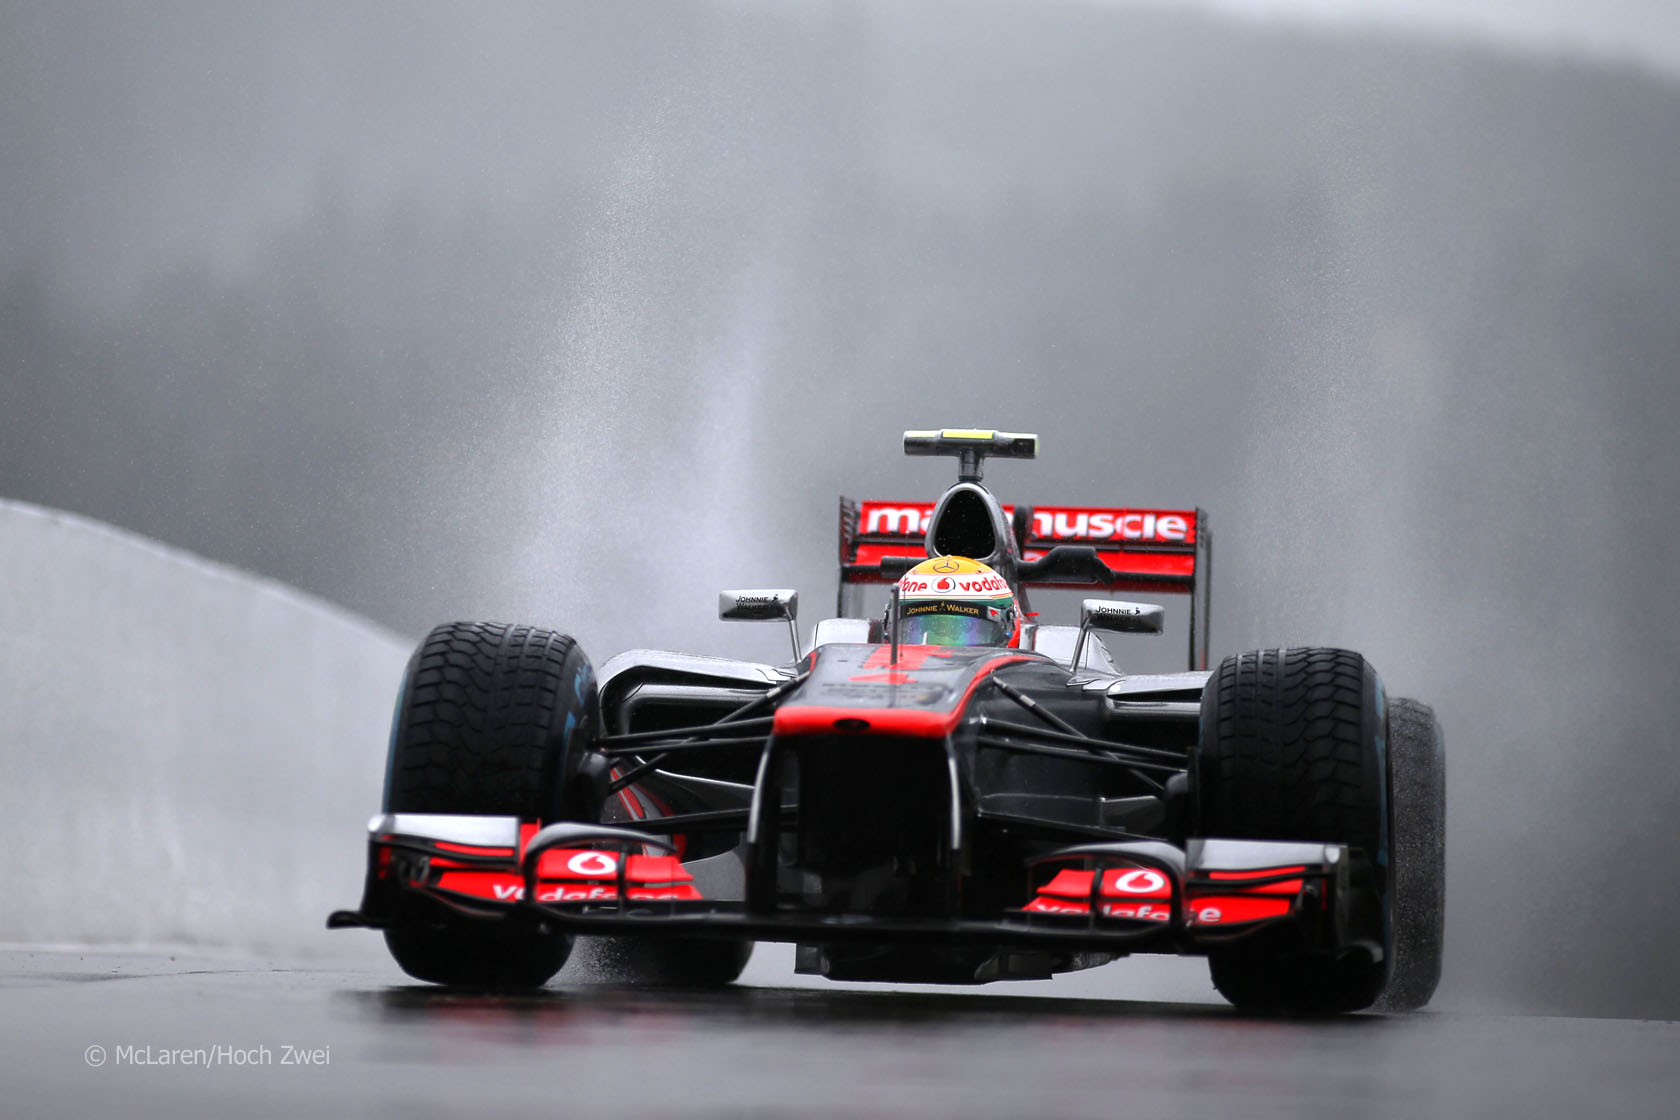 Vehicles McLaren F1 Wallpaper